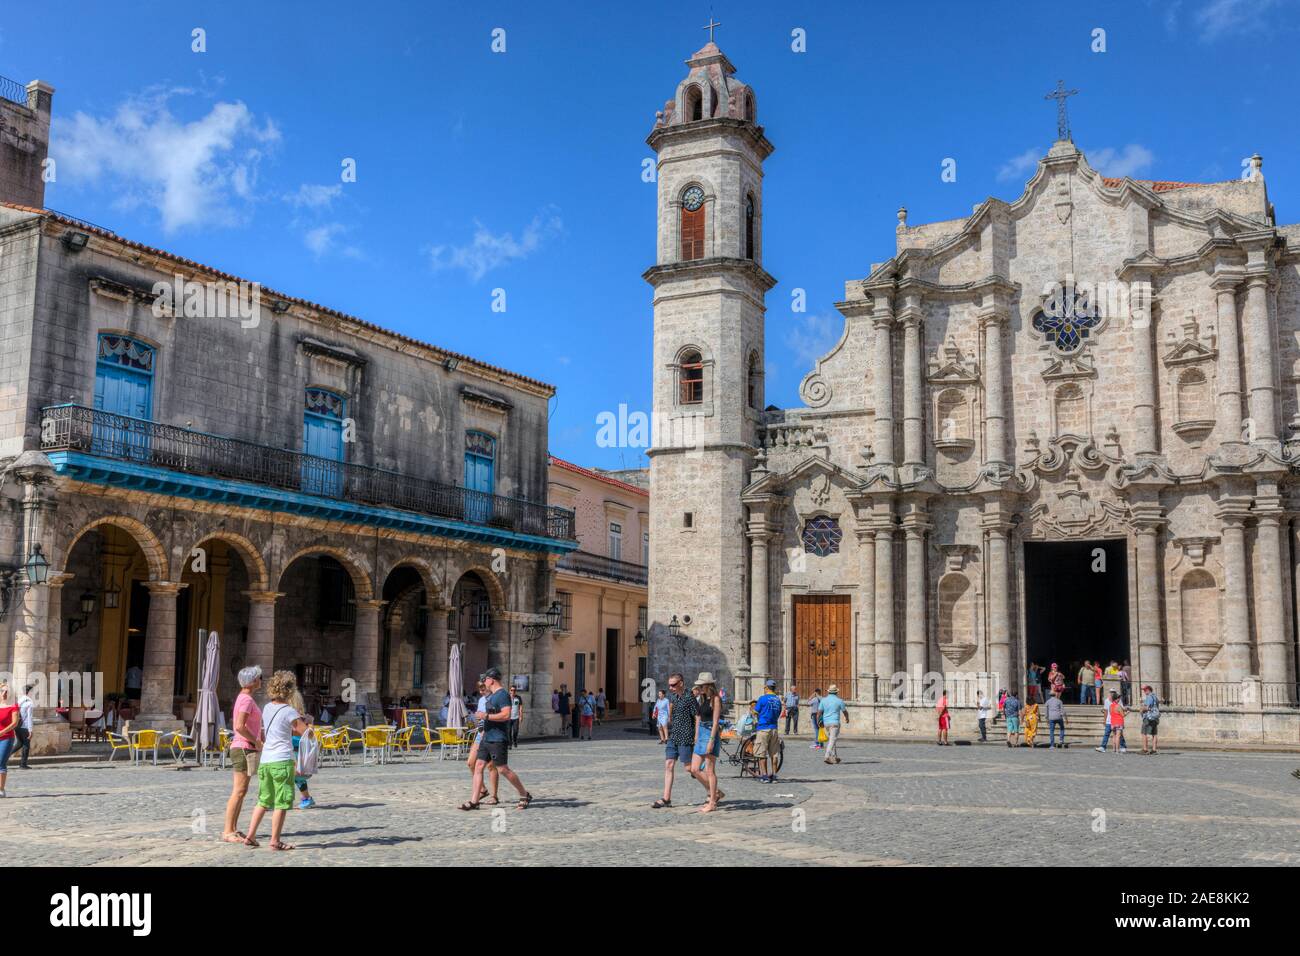 La Catedral de La Habana, Habana Vieja, Cuba, l'Amérique du Nord Banque D'Images